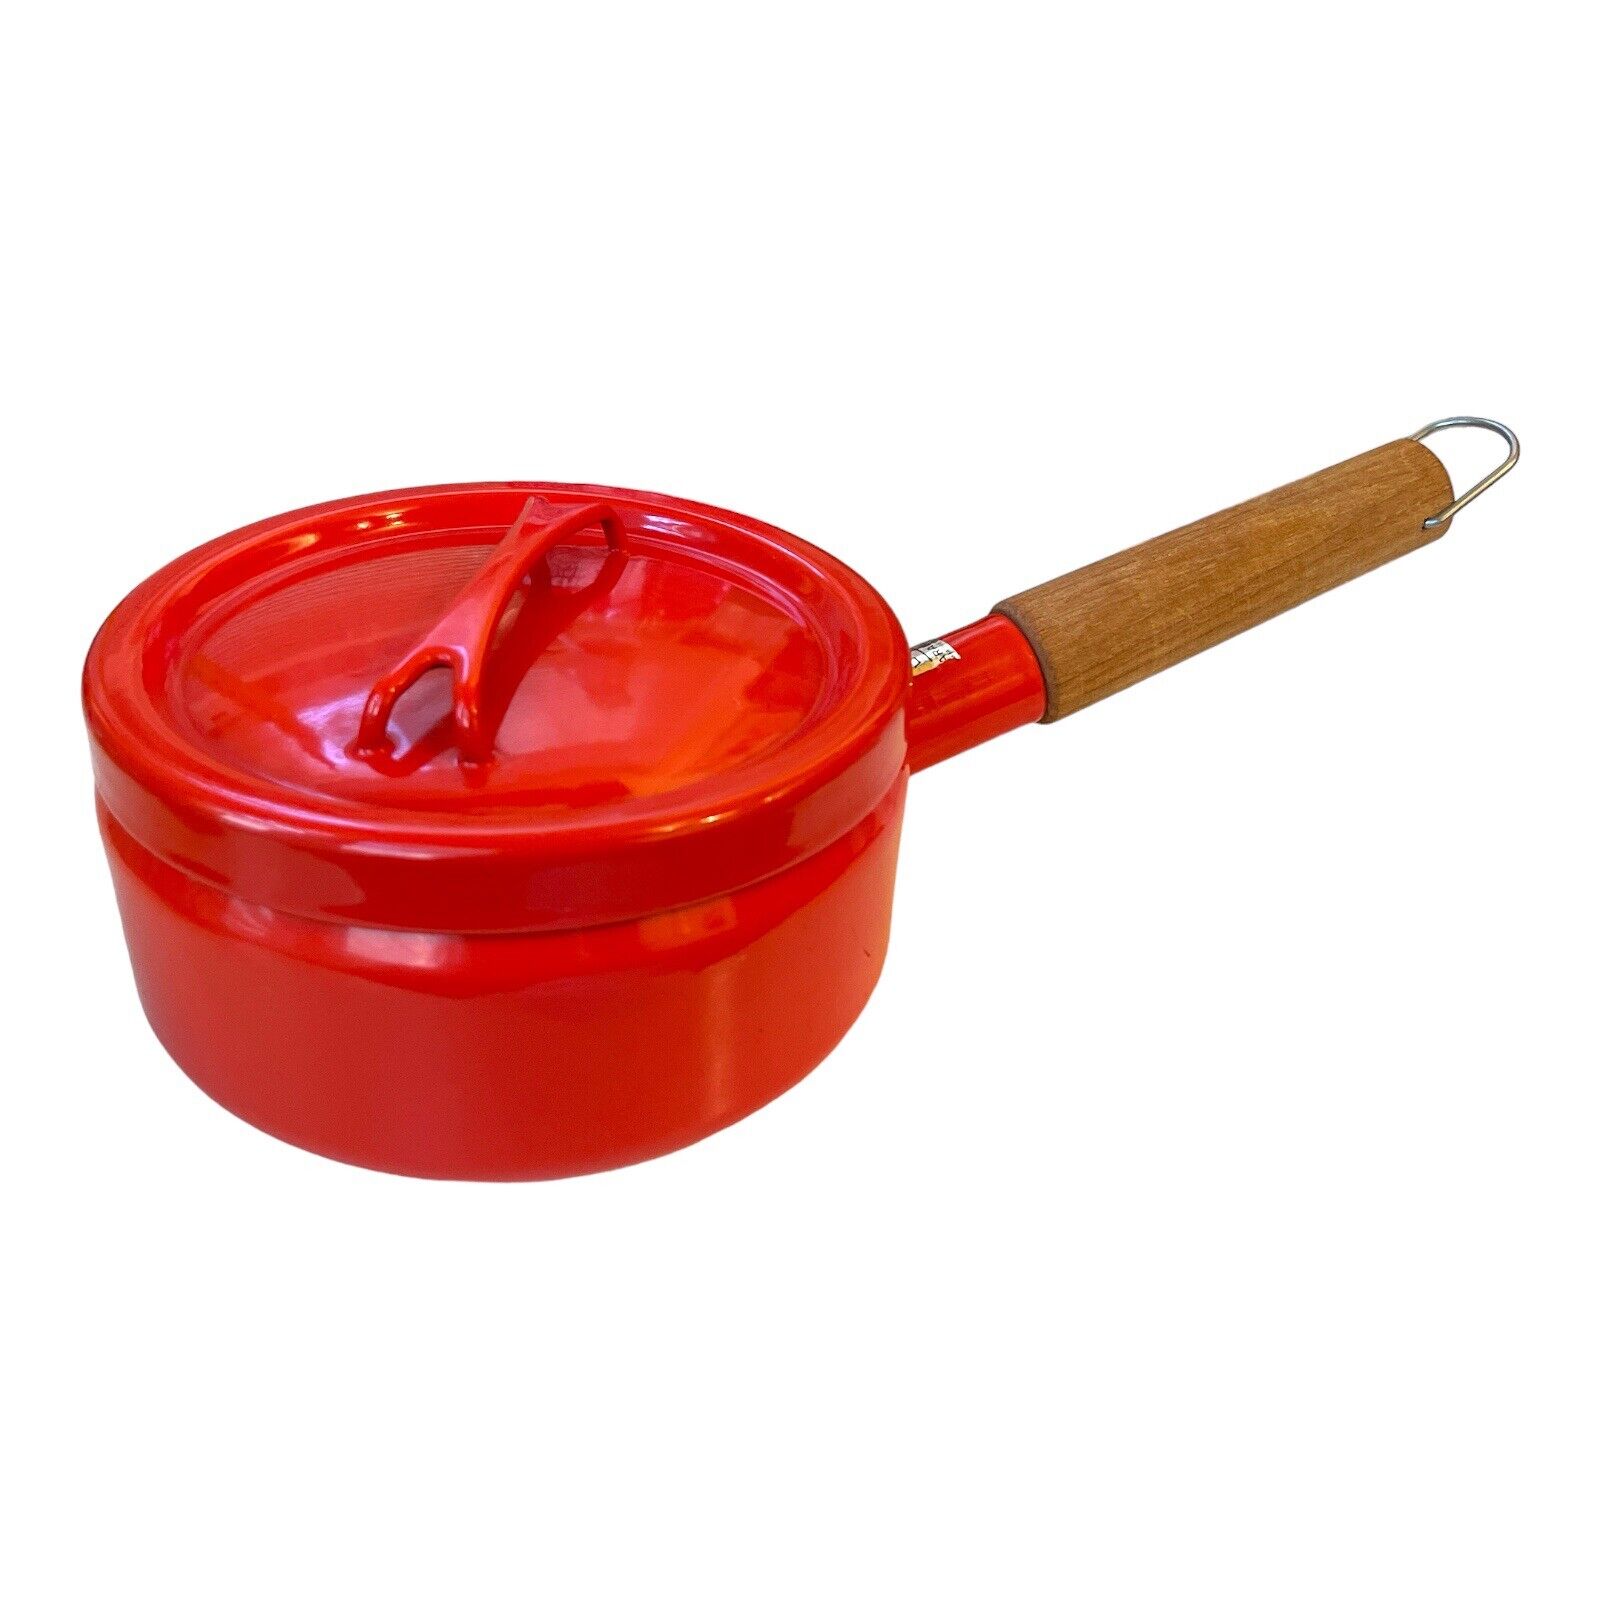 Vintage Arabia Of Finland Vintage Red Enameled Sauce Pan With Lid